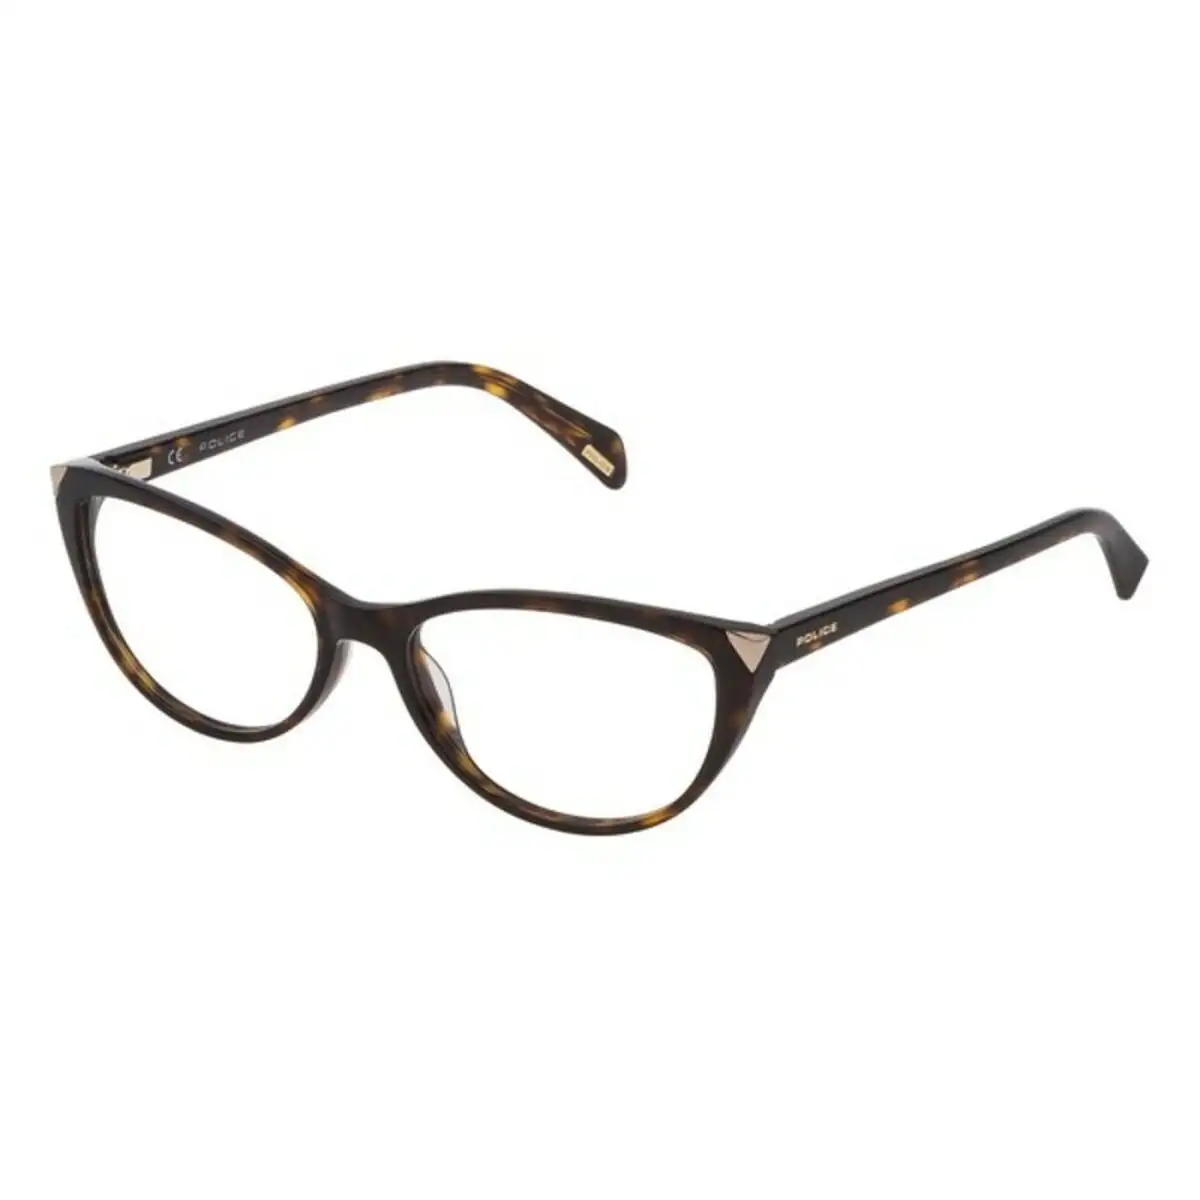 Monture de lunettes femme police vpl9280722 marron_8041. DIAYTAR SENEGAL - Où la Qualité et la Diversité Fusionnent. Explorez notre boutique en ligne pour découvrir une gamme variée de produits qui incarnent l'excellence et l'authenticité.